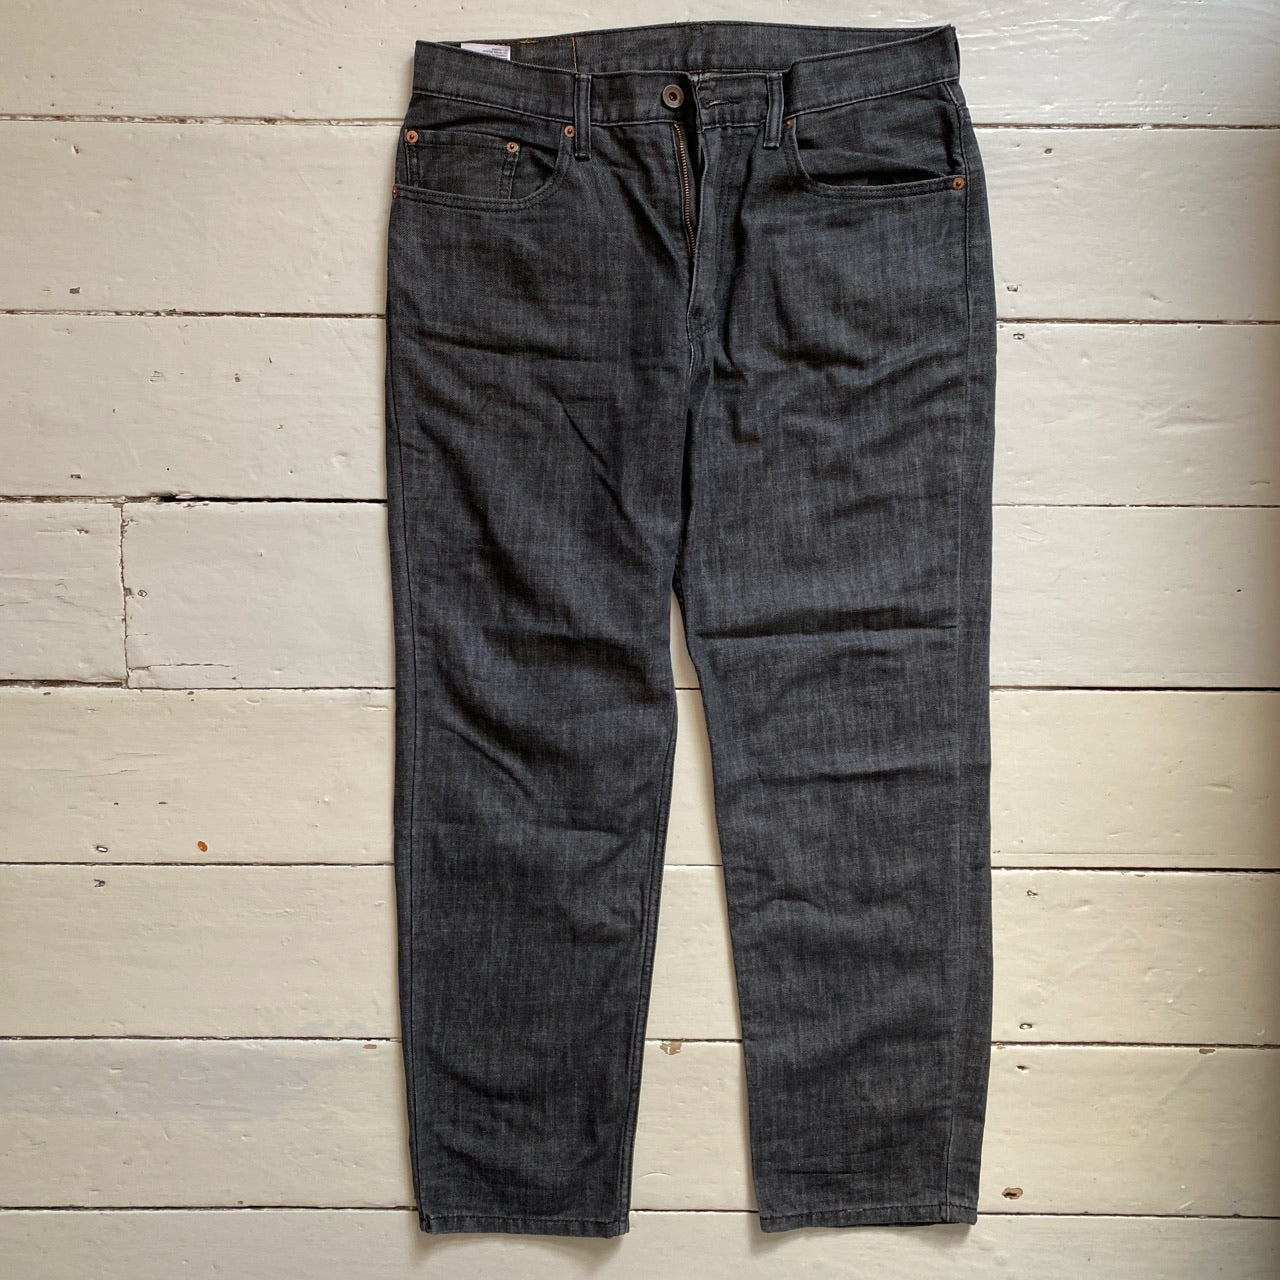 Levis 504 Grey Jeans (36/30)